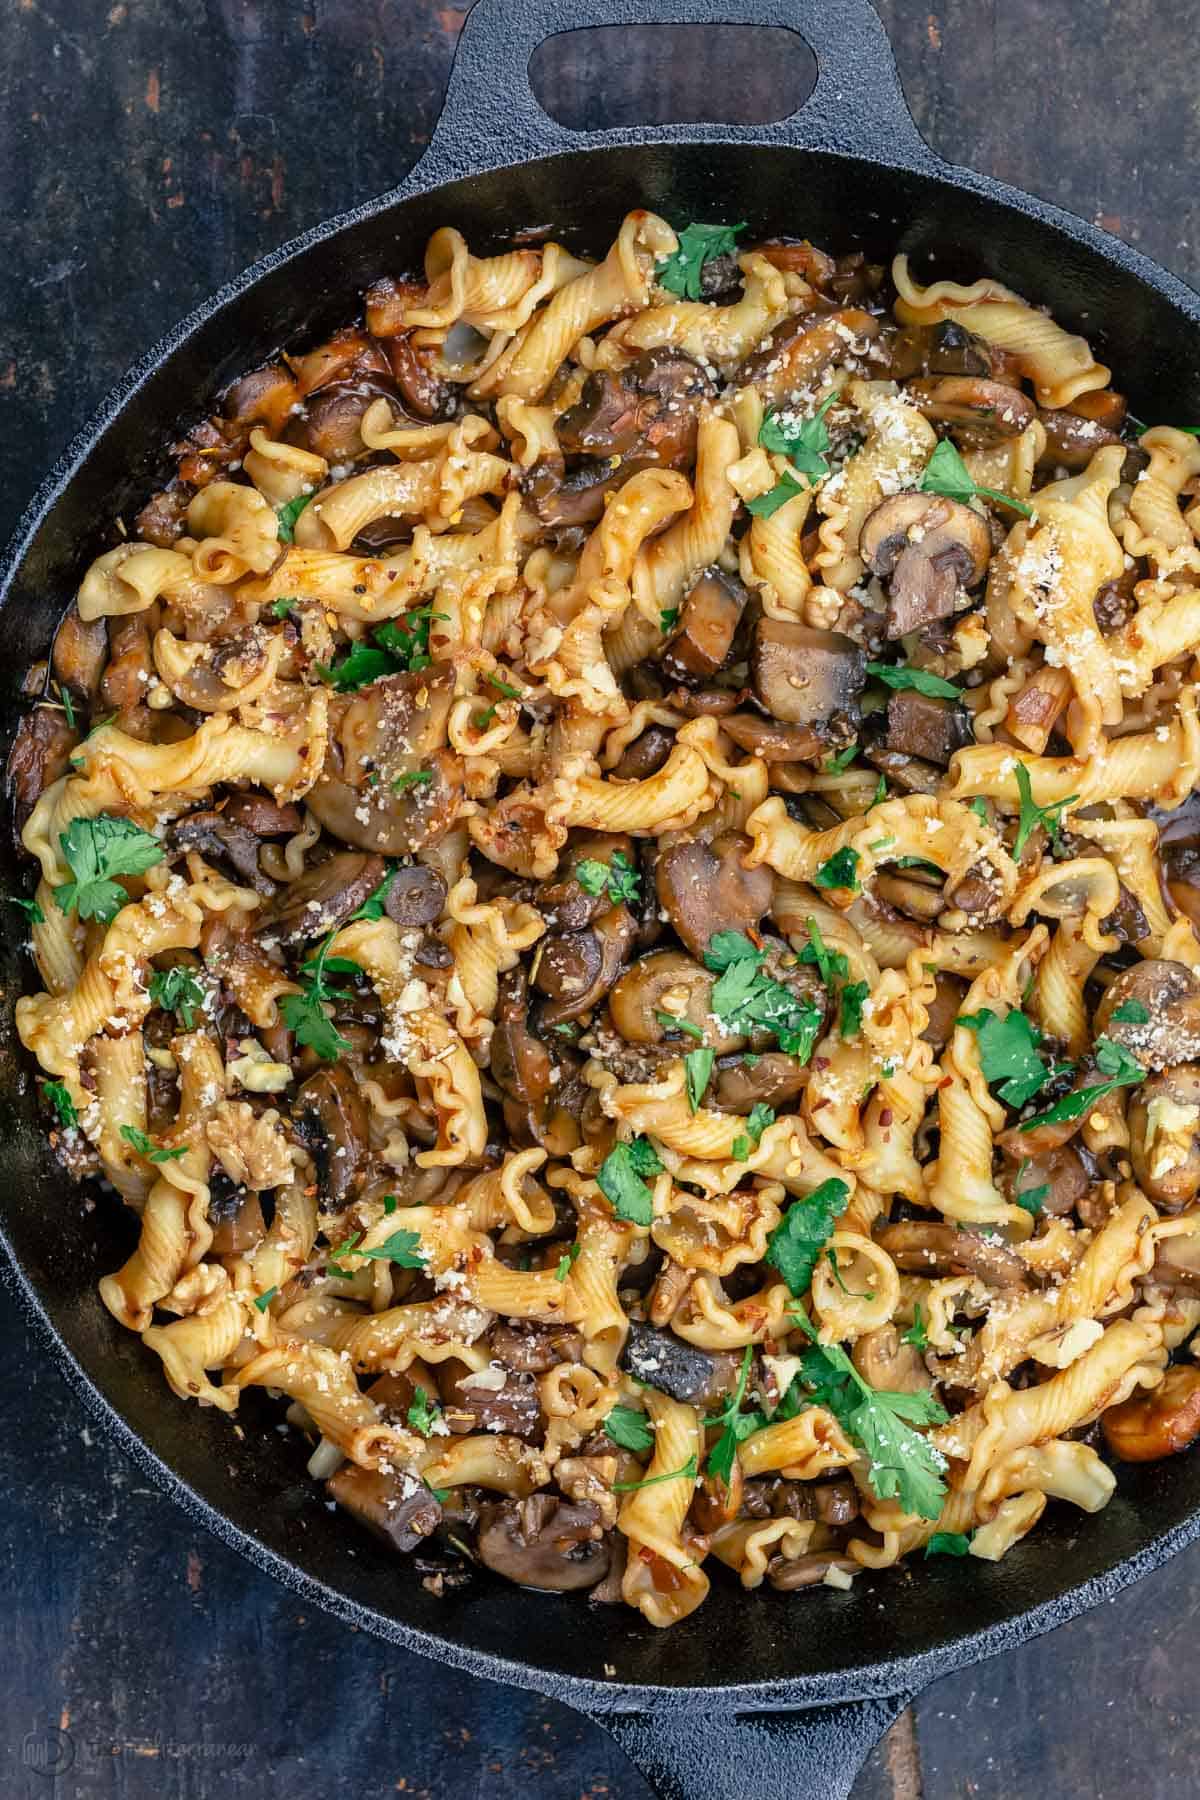 https://www.themediterraneandish.com/wp-content/uploads/2021/04/mushroom-pasta-recipe-8.jpg